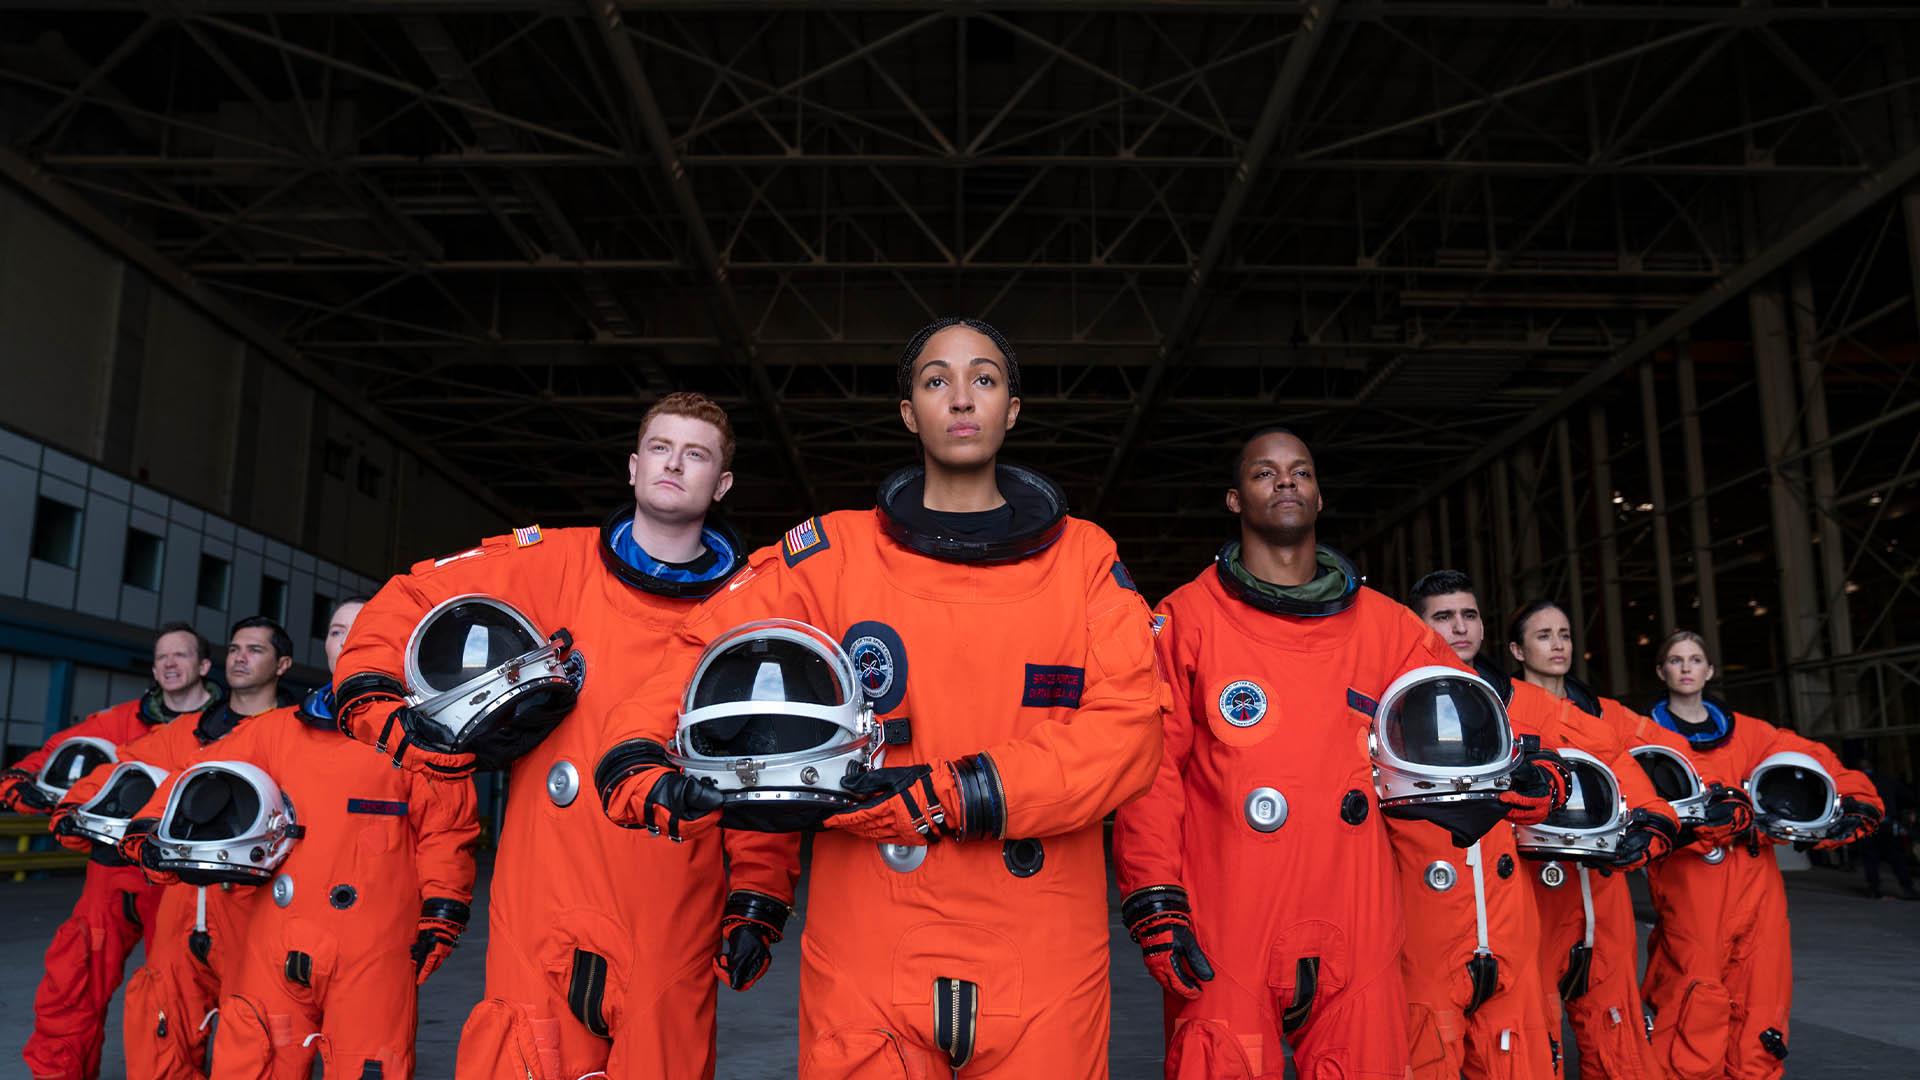 Turuncu giysili uzay gücü serisindeki astronot karakterleri